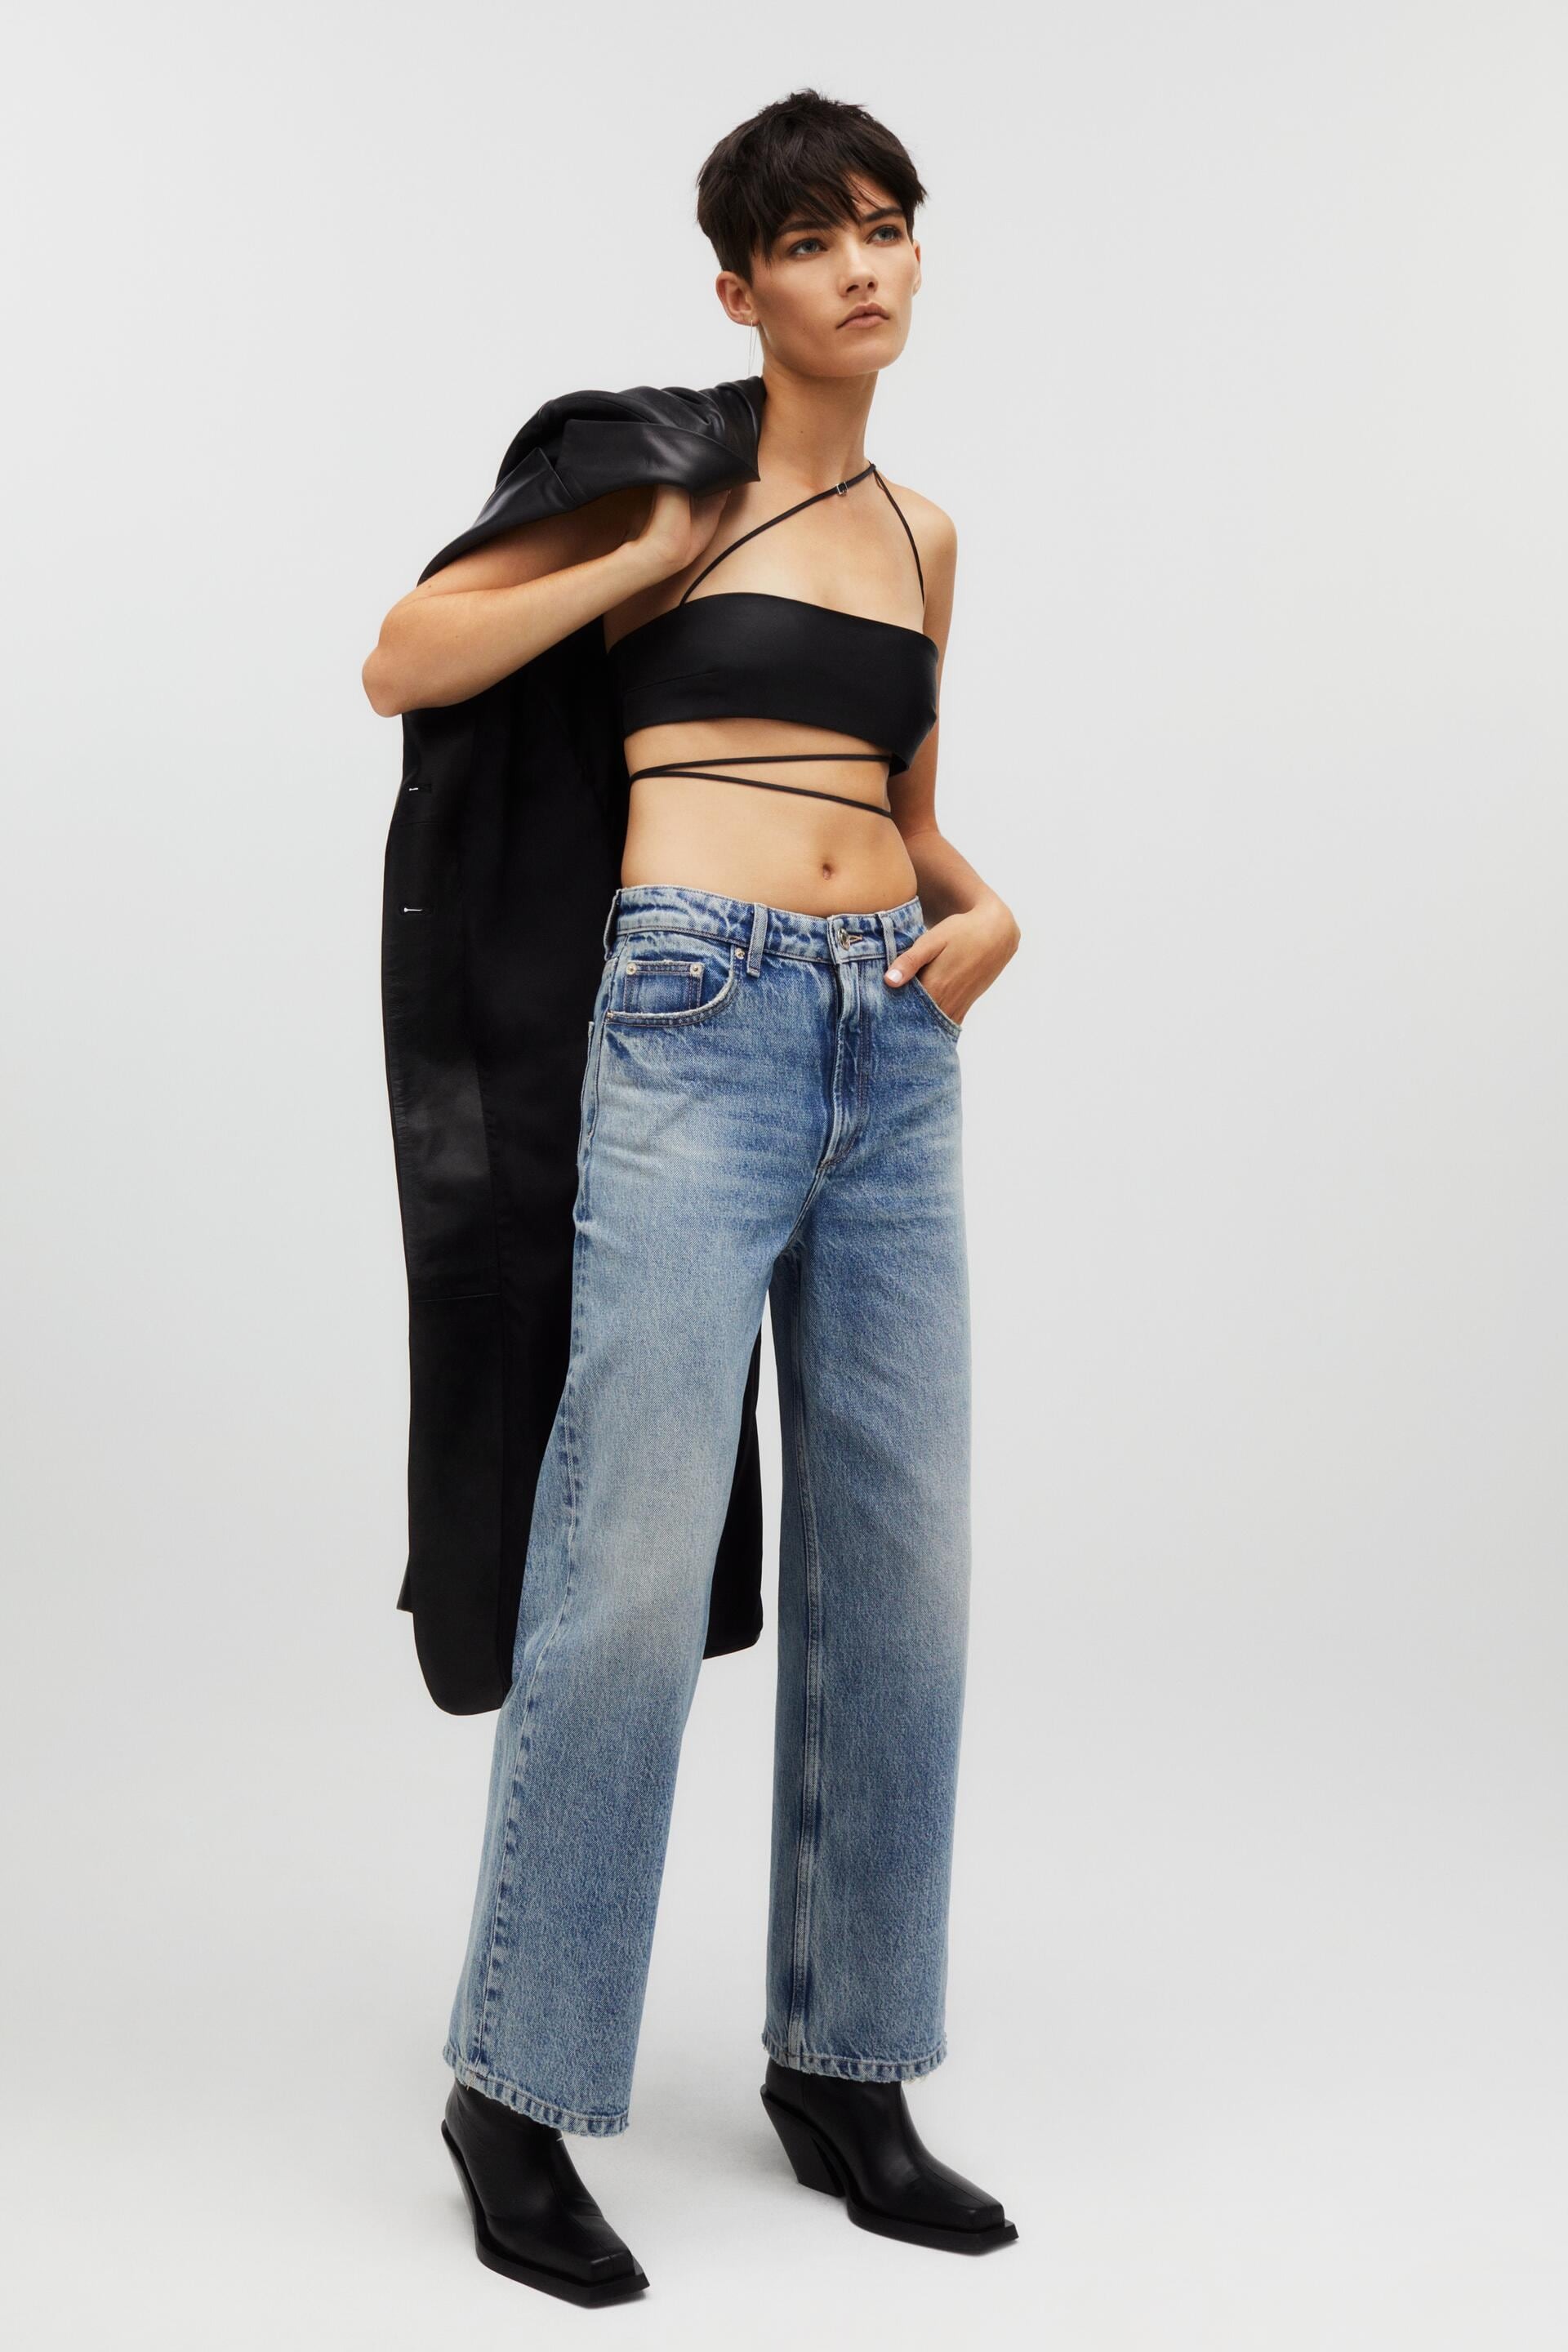 Kaia Gerber Designed 41 It-Girl Staples for Zara-I'd Buy These 15 ASAP